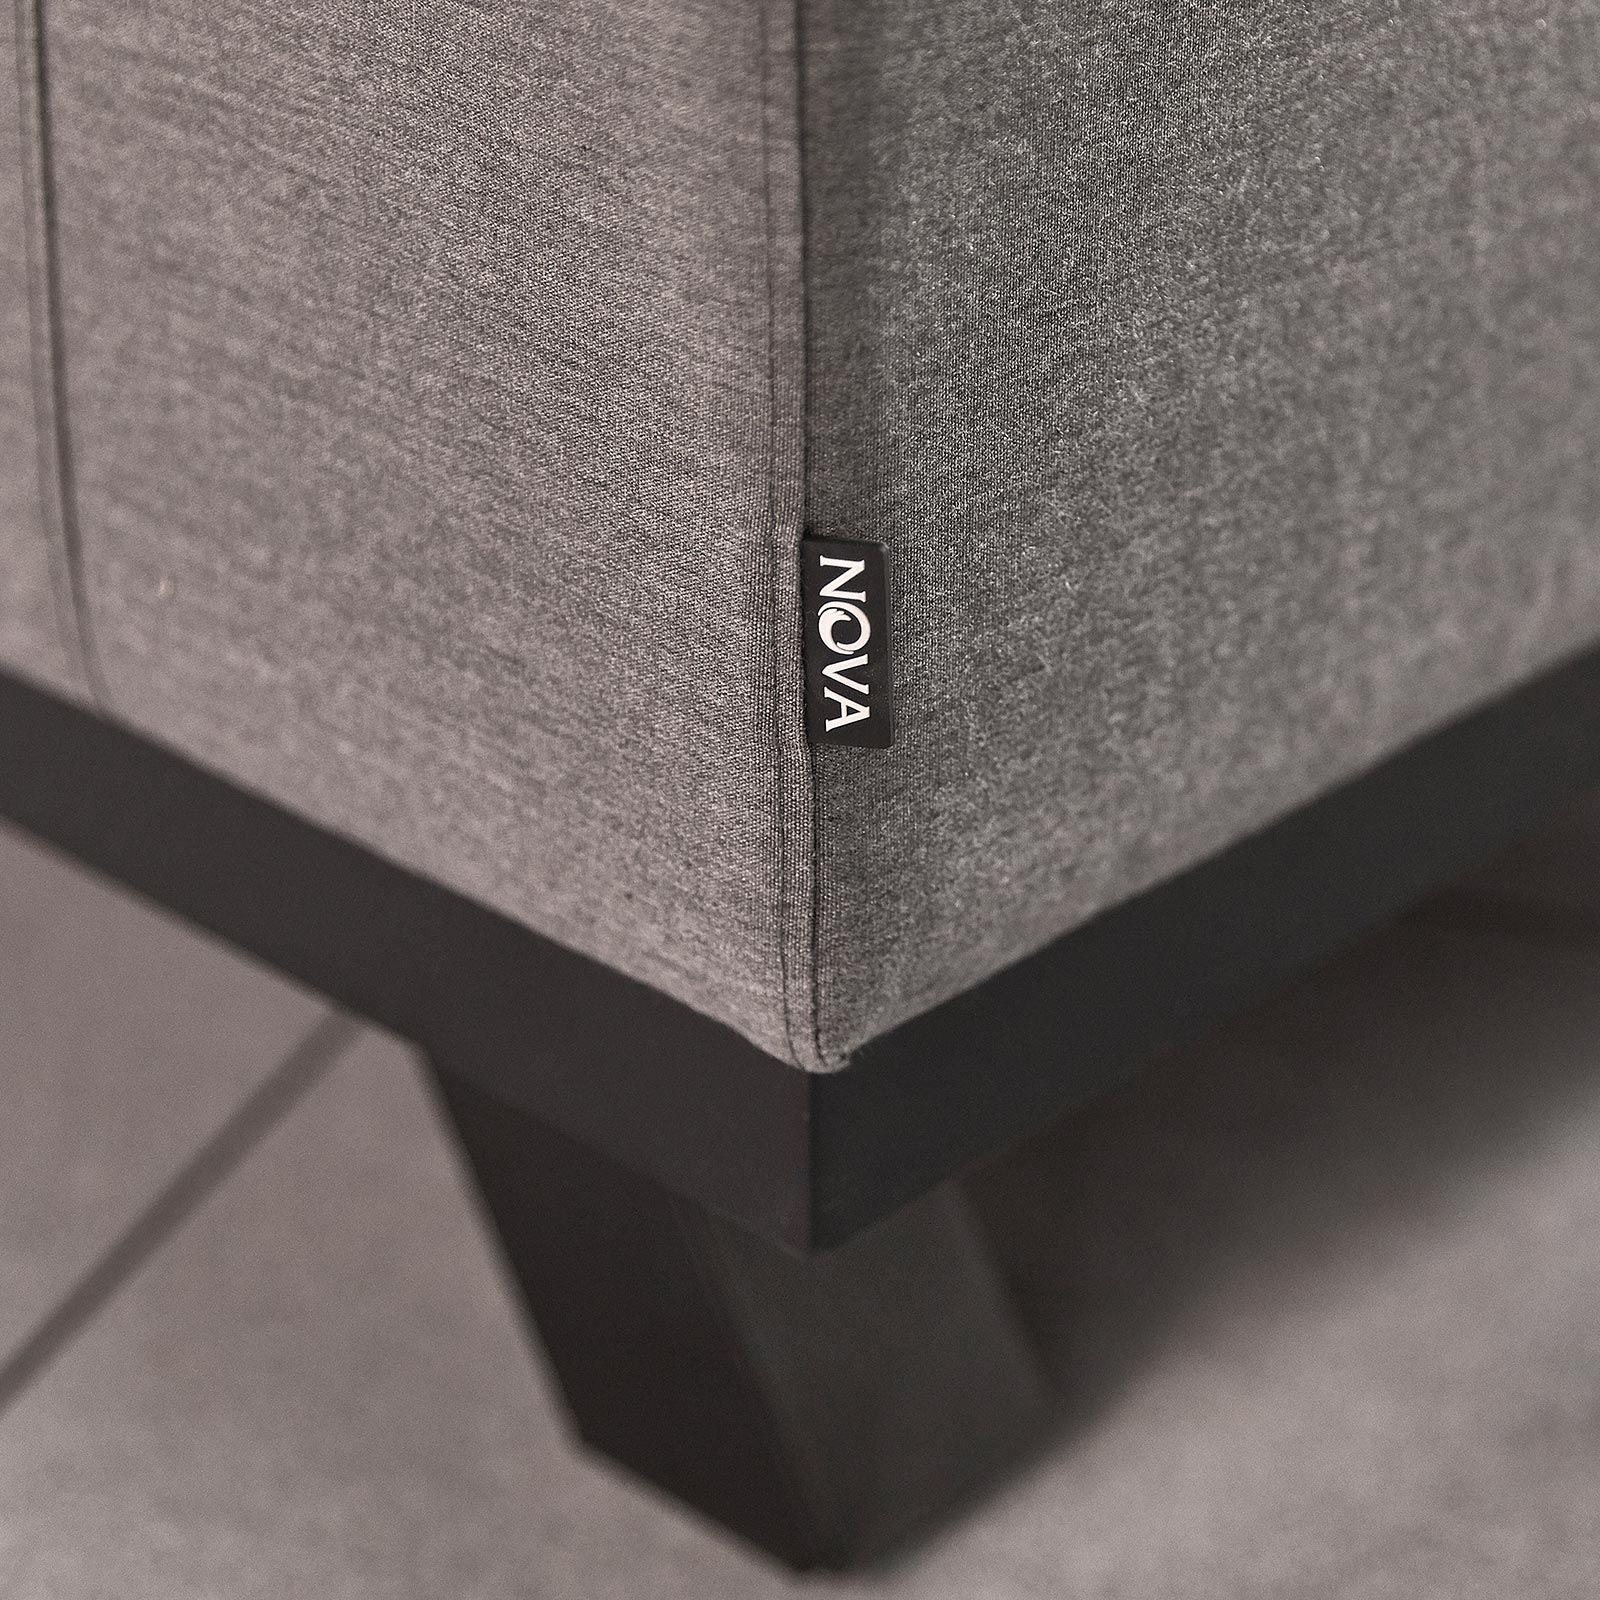 Tranquility Outdoor Fabric Corner Sofa Set by Nova